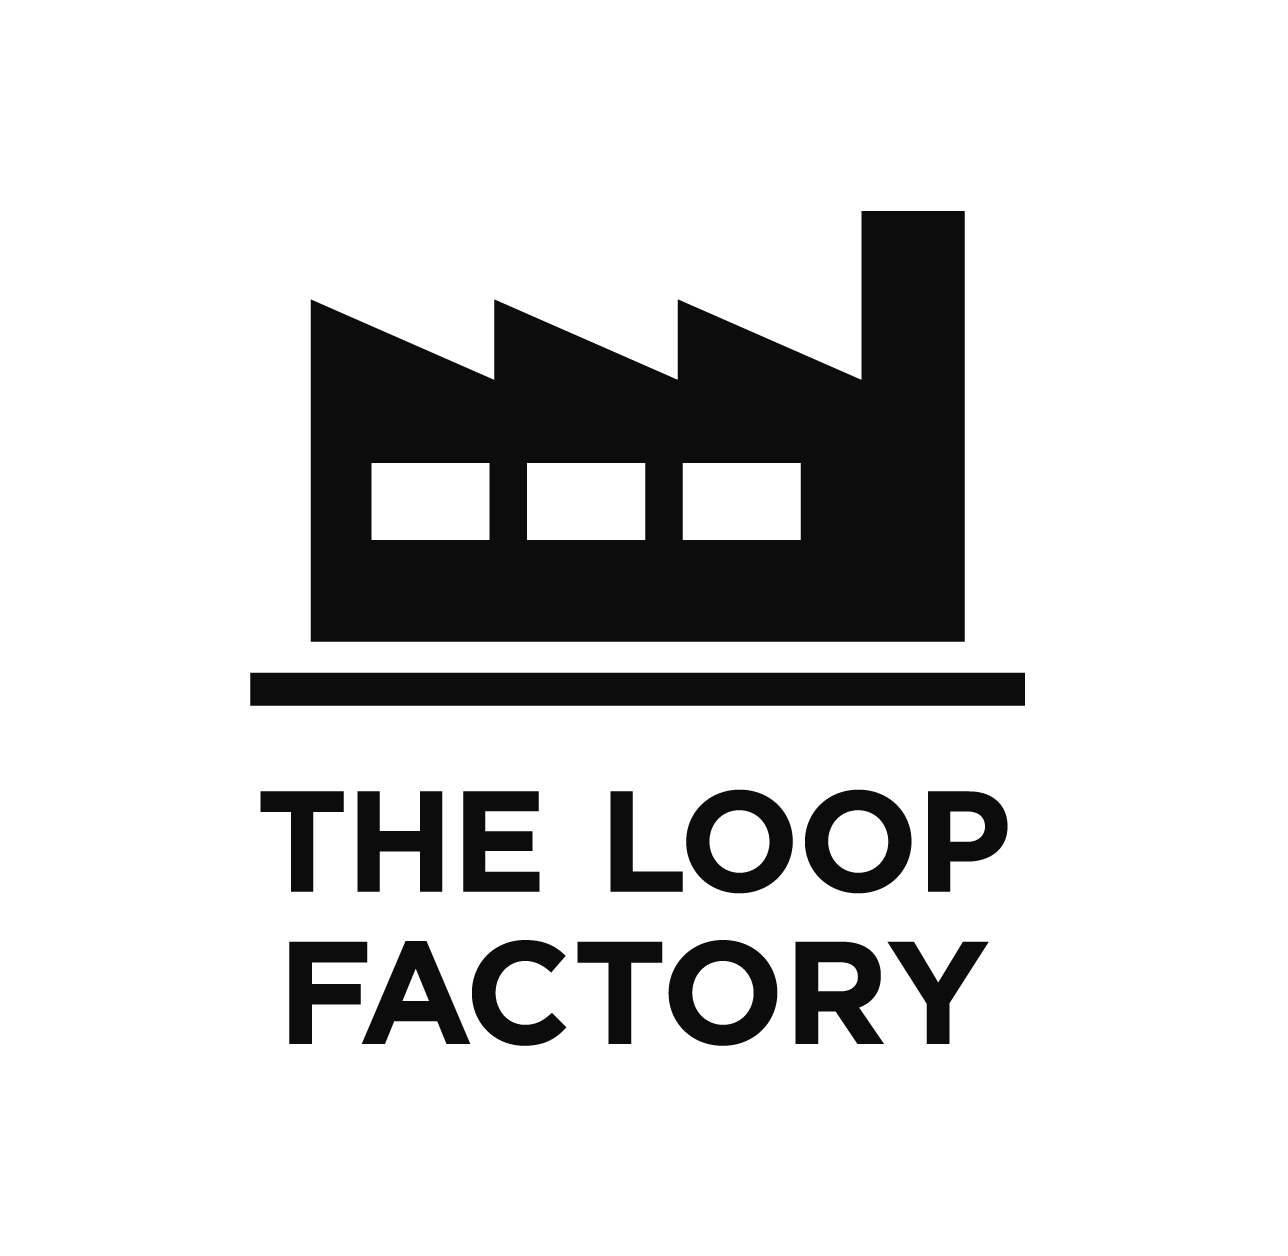 The Loop Factory